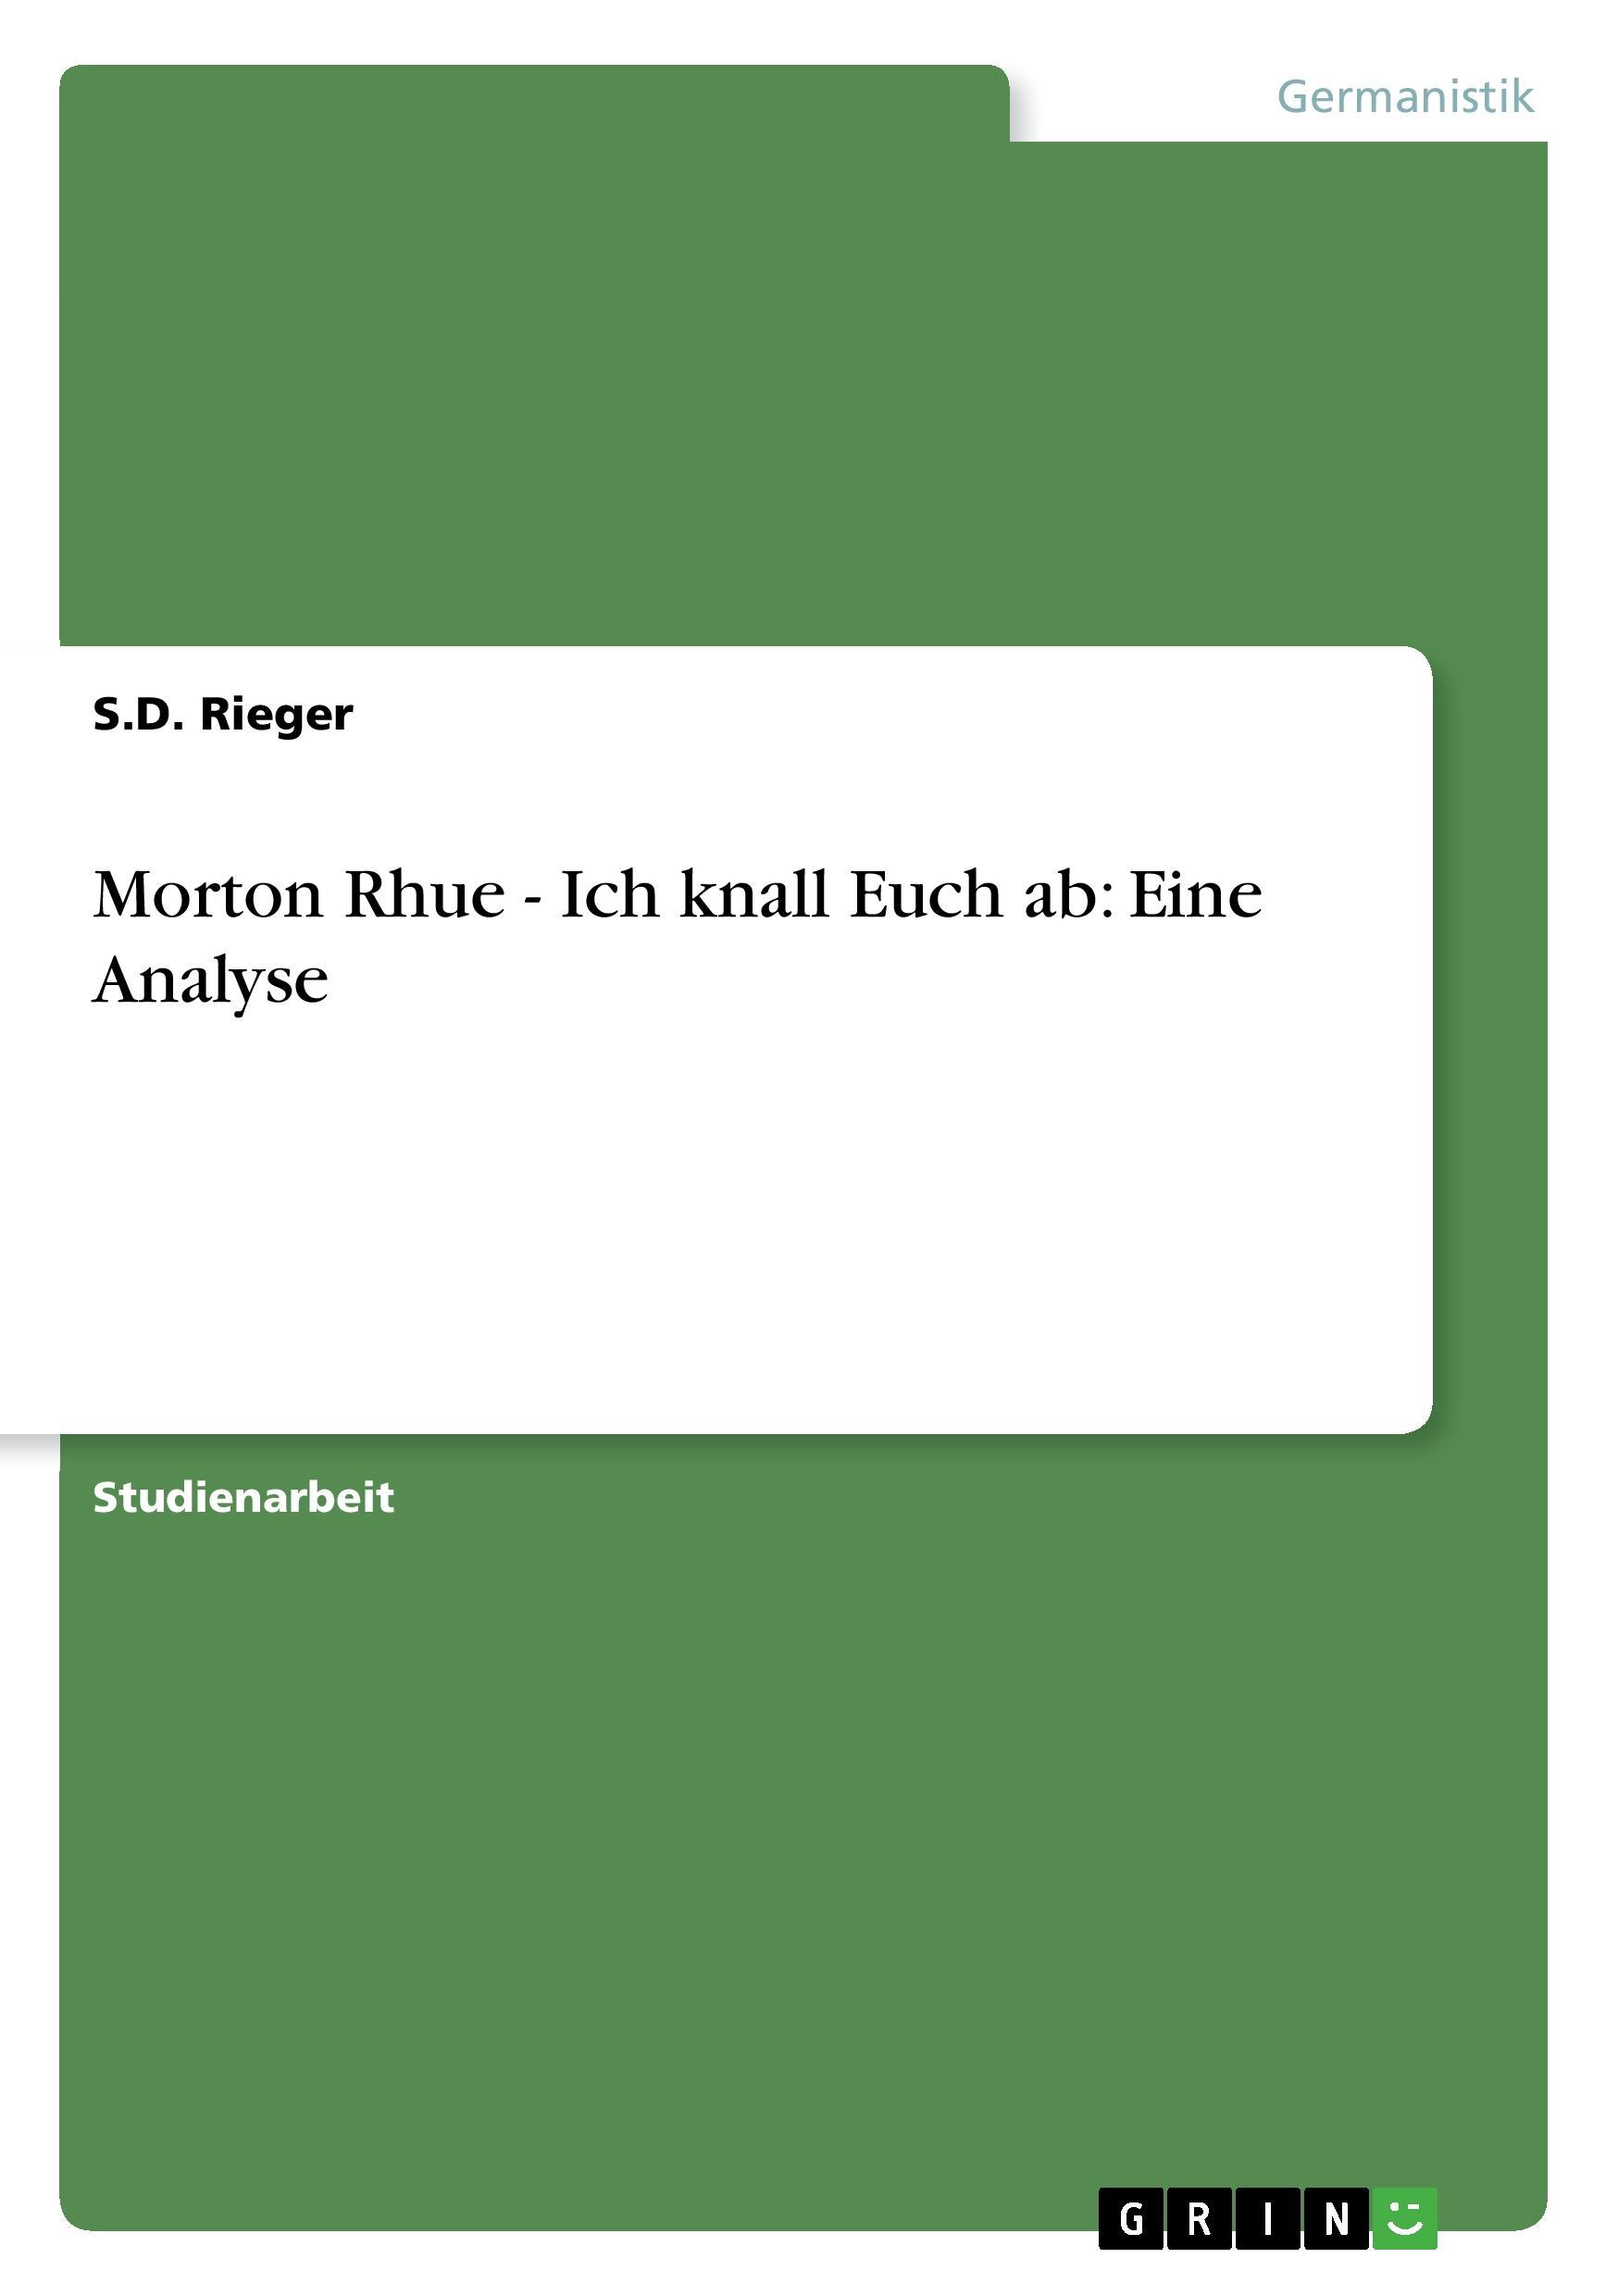 Morton Rhue - Ich knall Euch ab: Eine Analyse - Rieger, S. D.